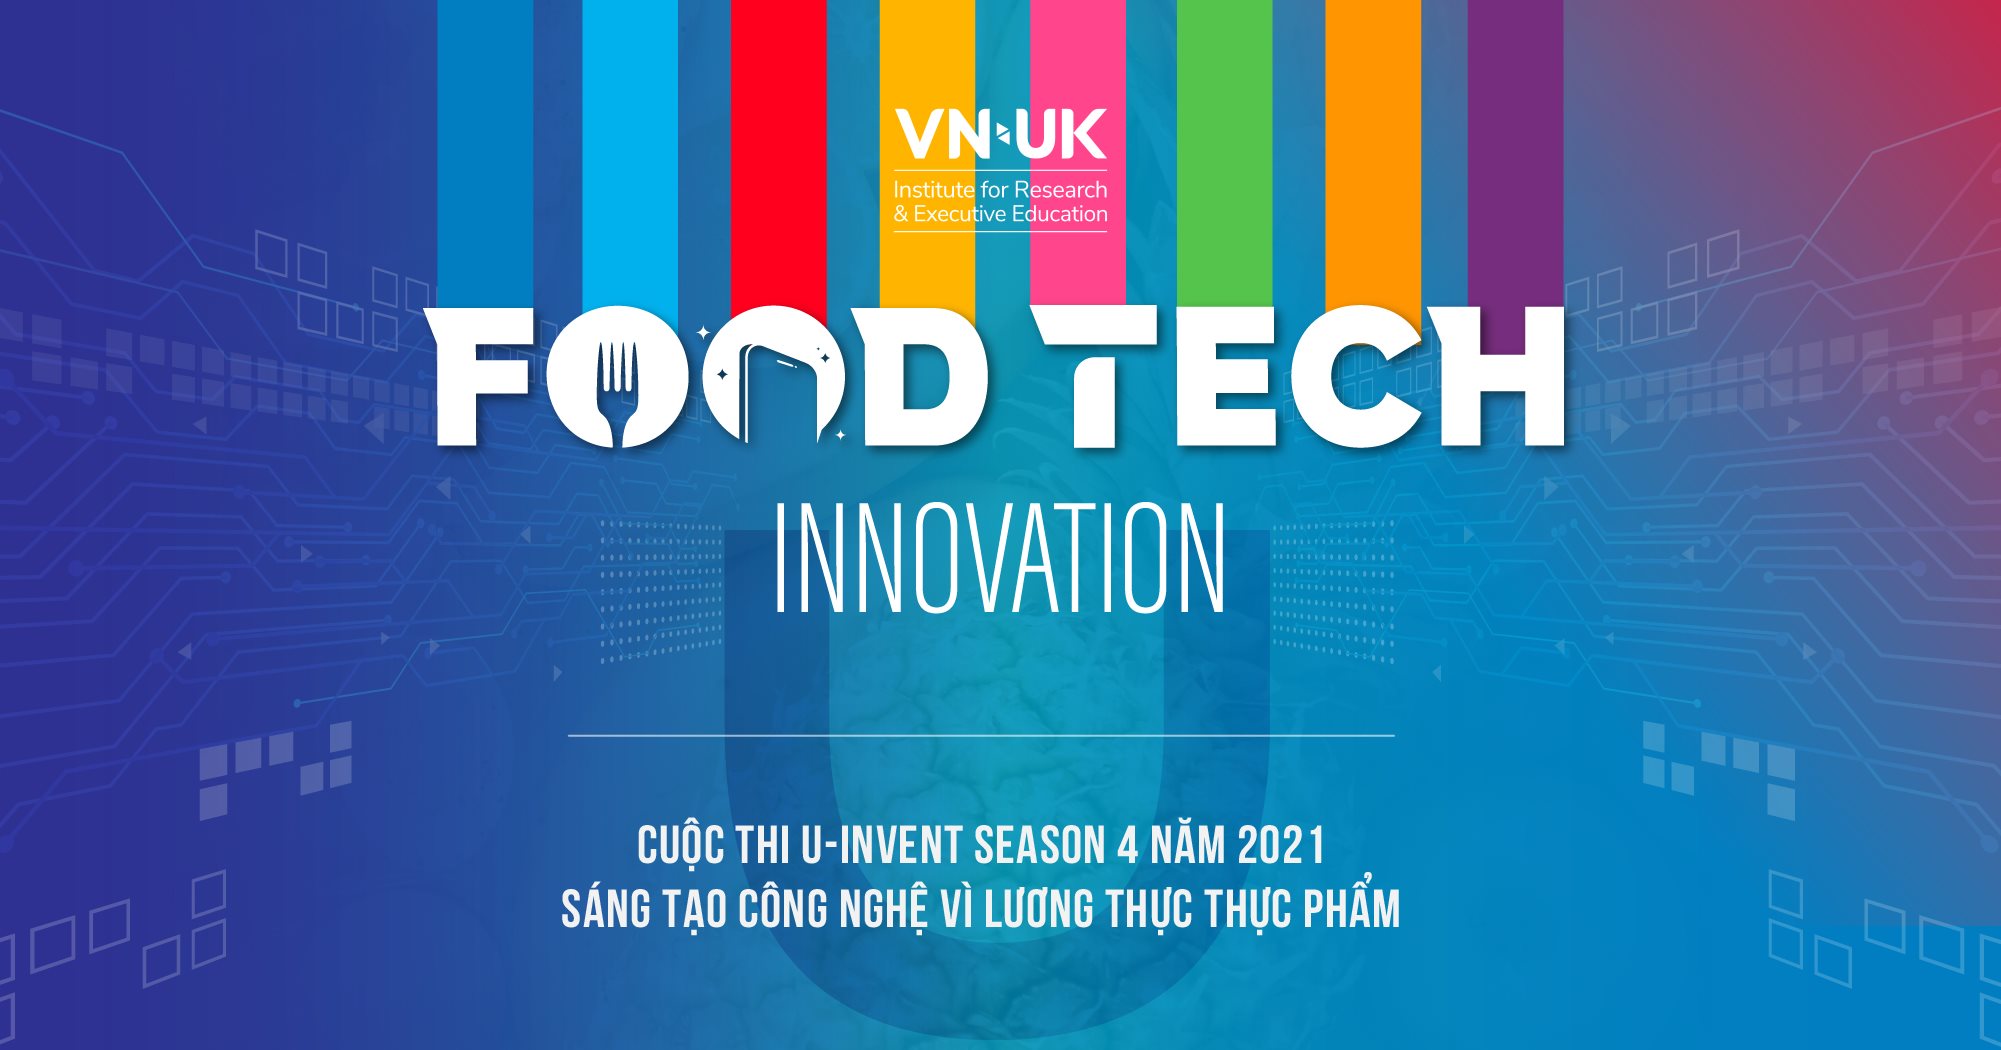 Chung kết cuộc thi Sáng tạo công nghệ vì lương thực, thực phẩm